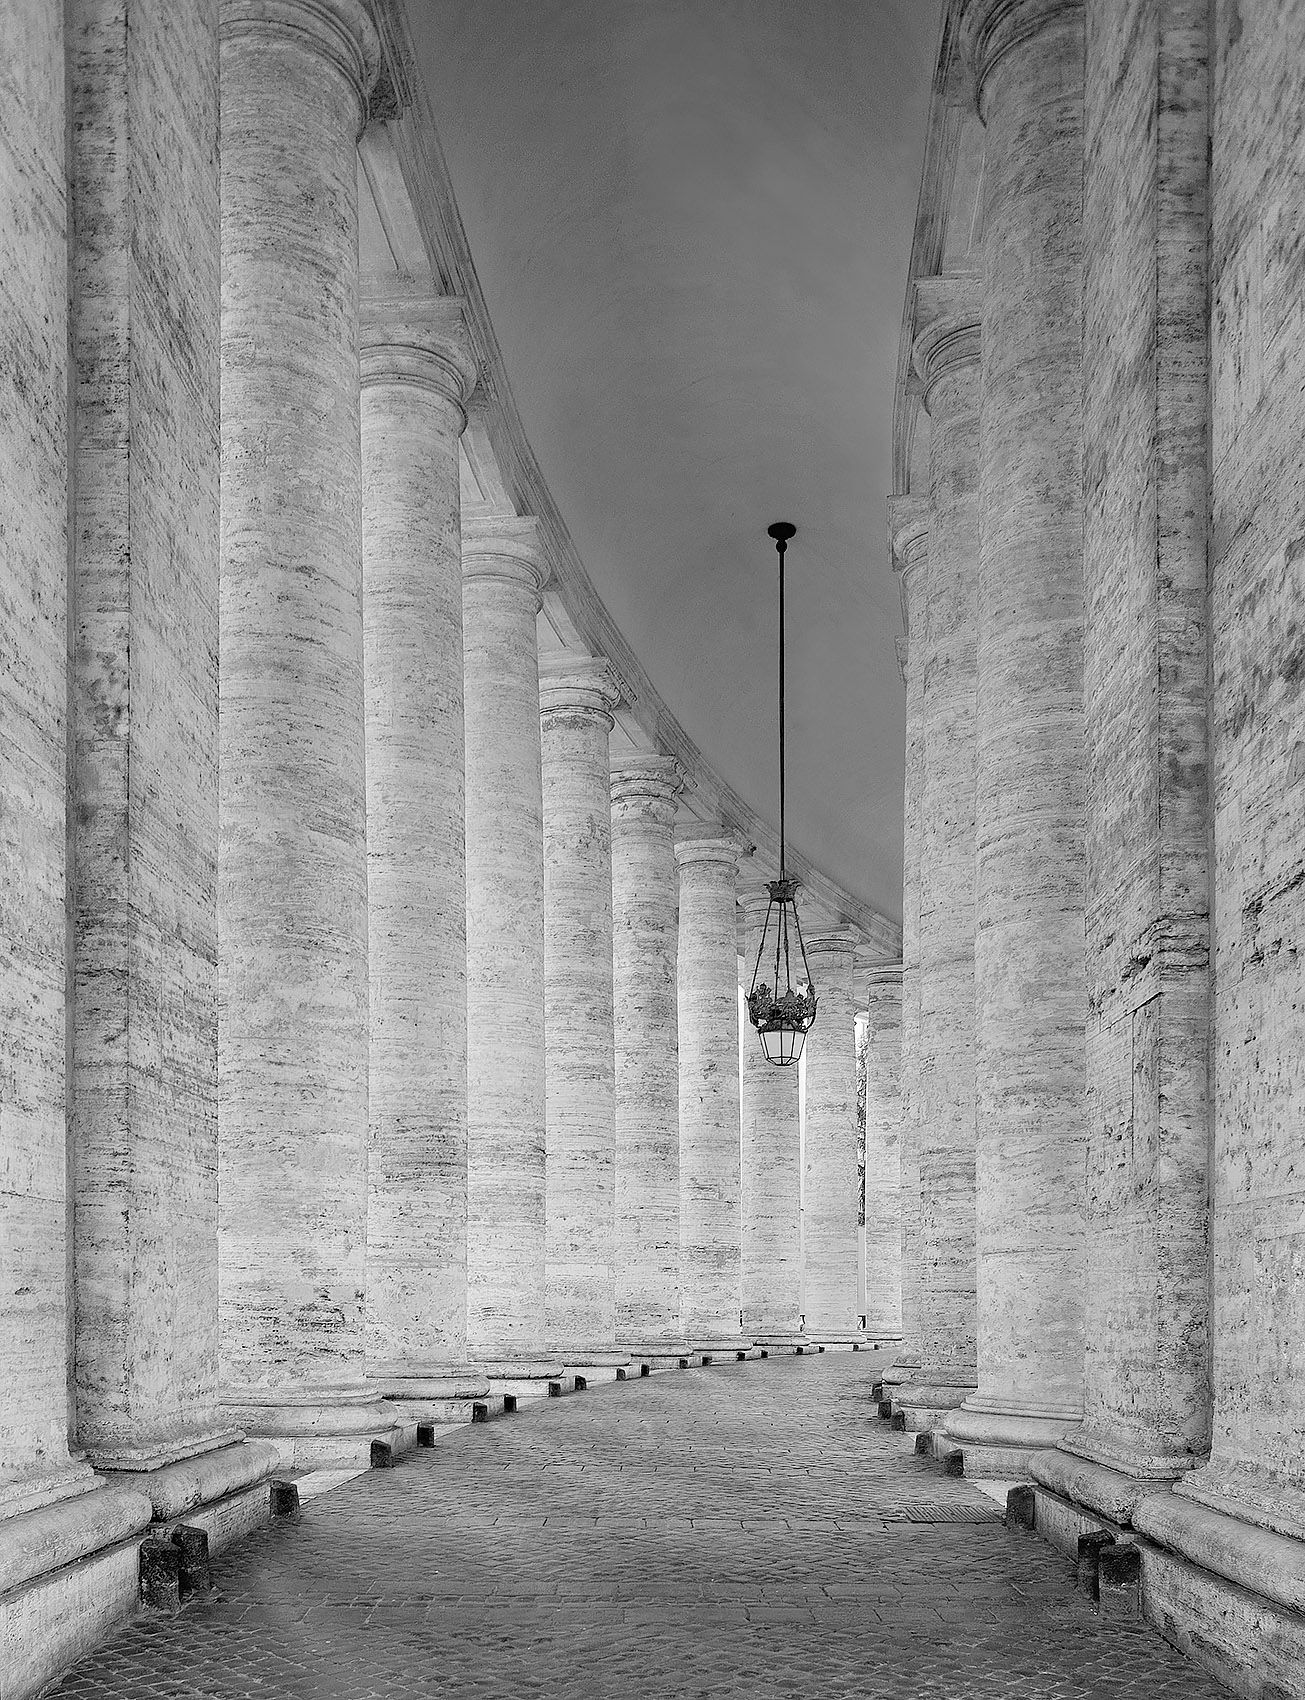 St. Peter's Columns